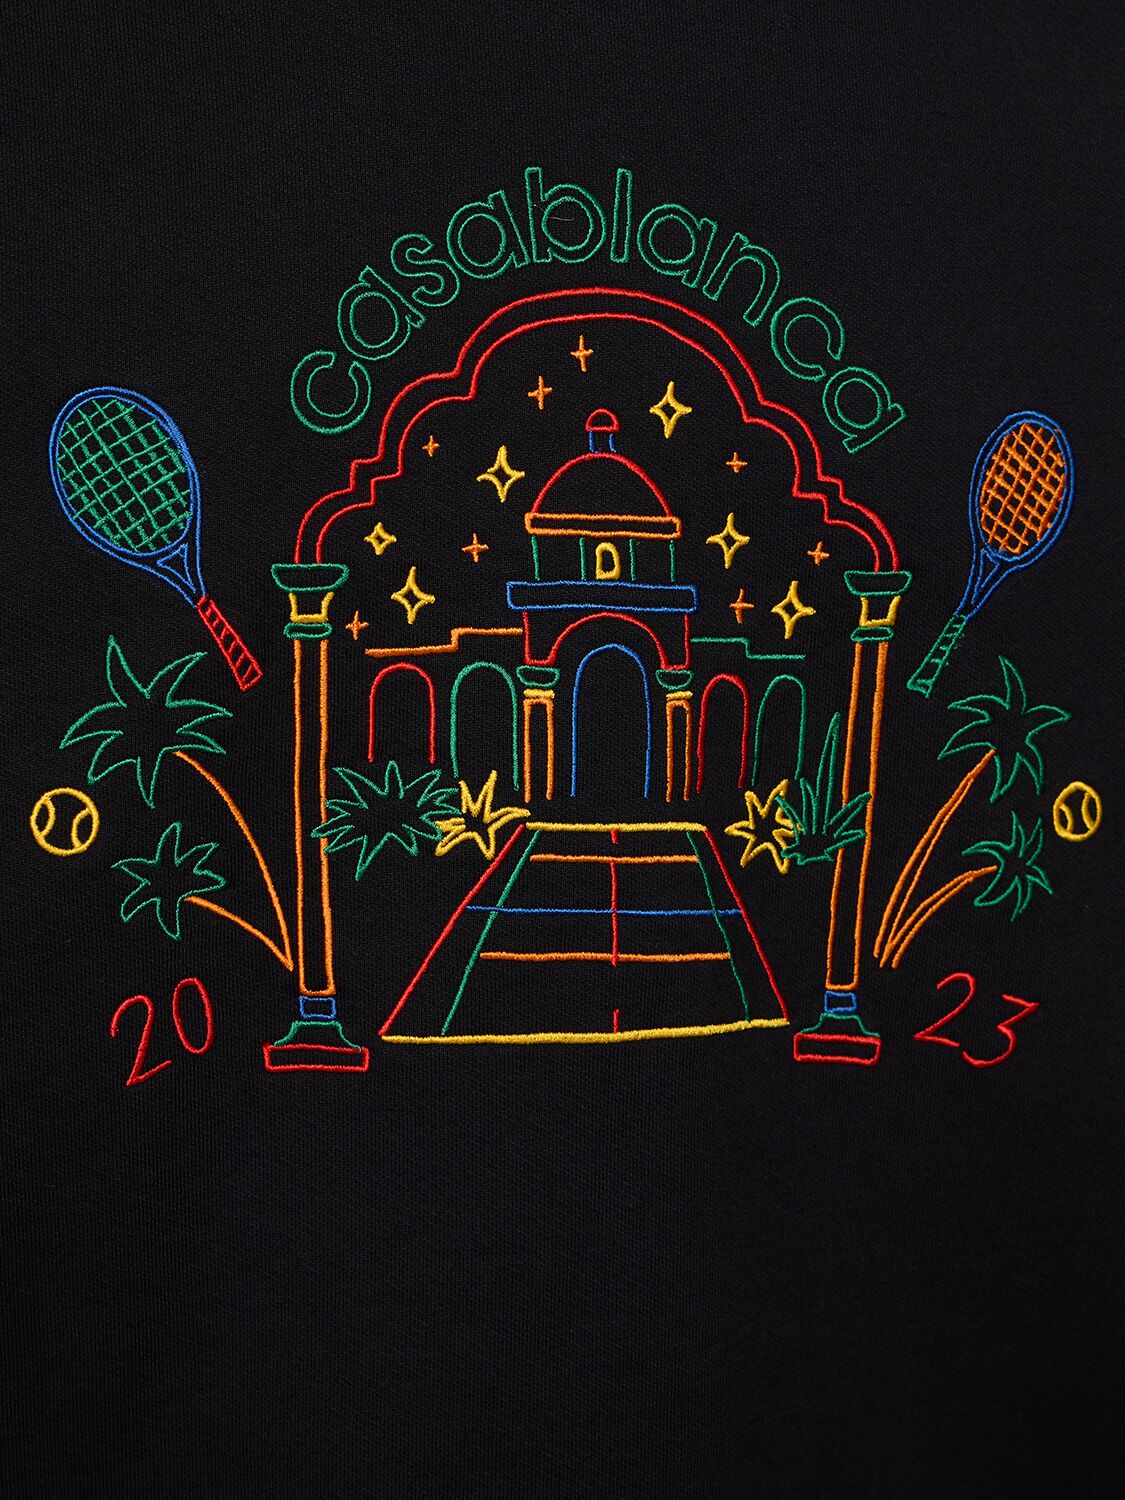 Shop Casablanca Crayon Temple Cotton Sweatshirt In Black